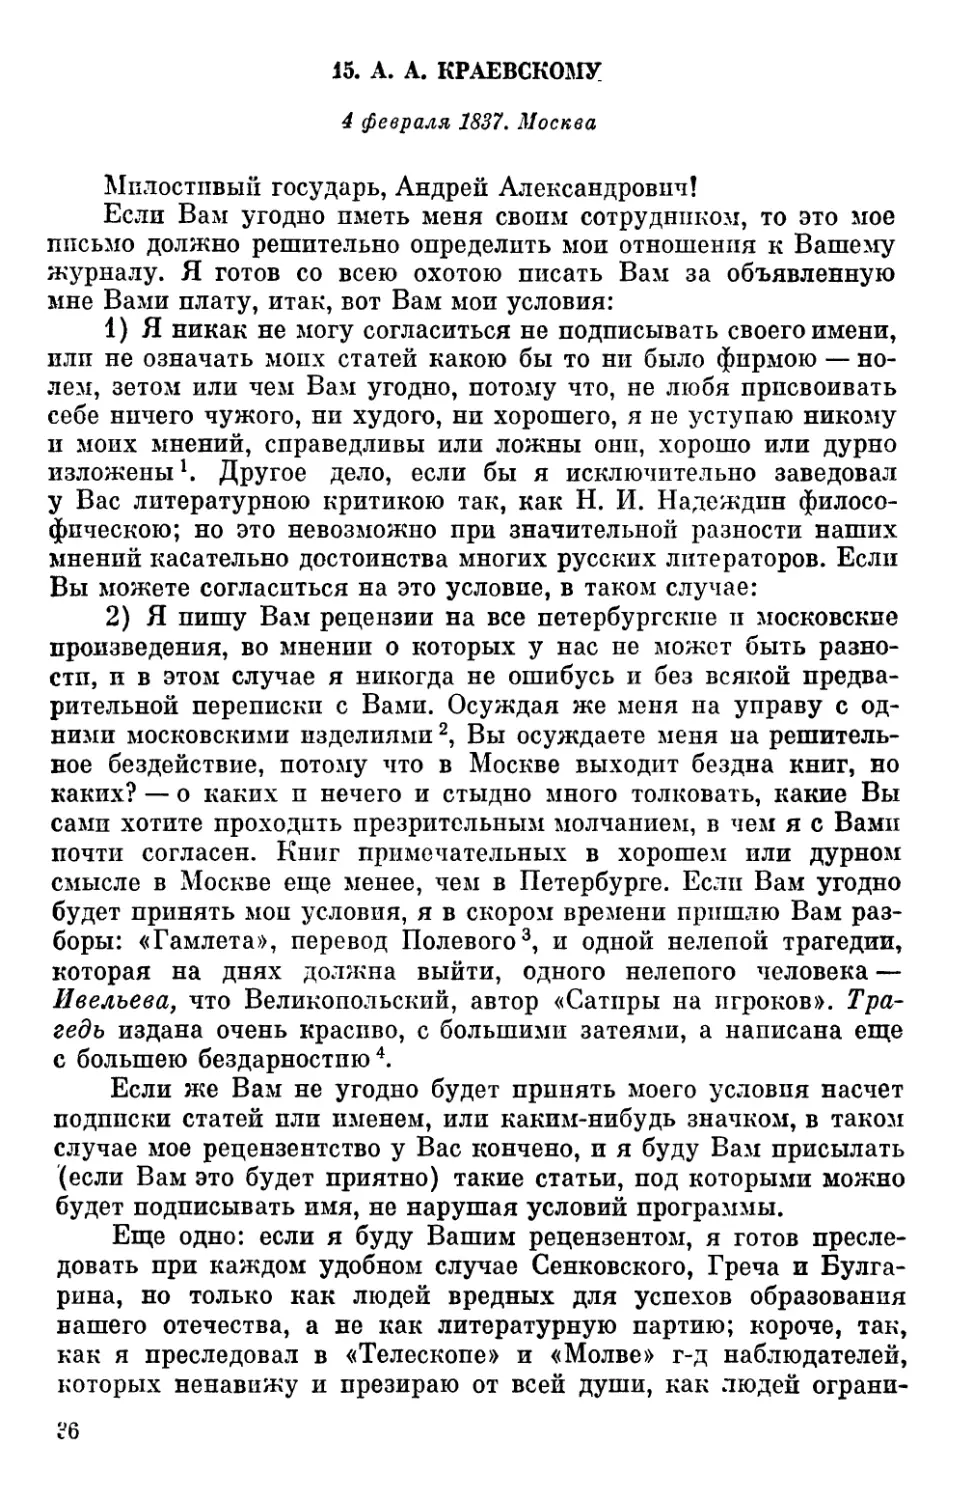 15. А. А. Краевскому. 4 февраля 1837